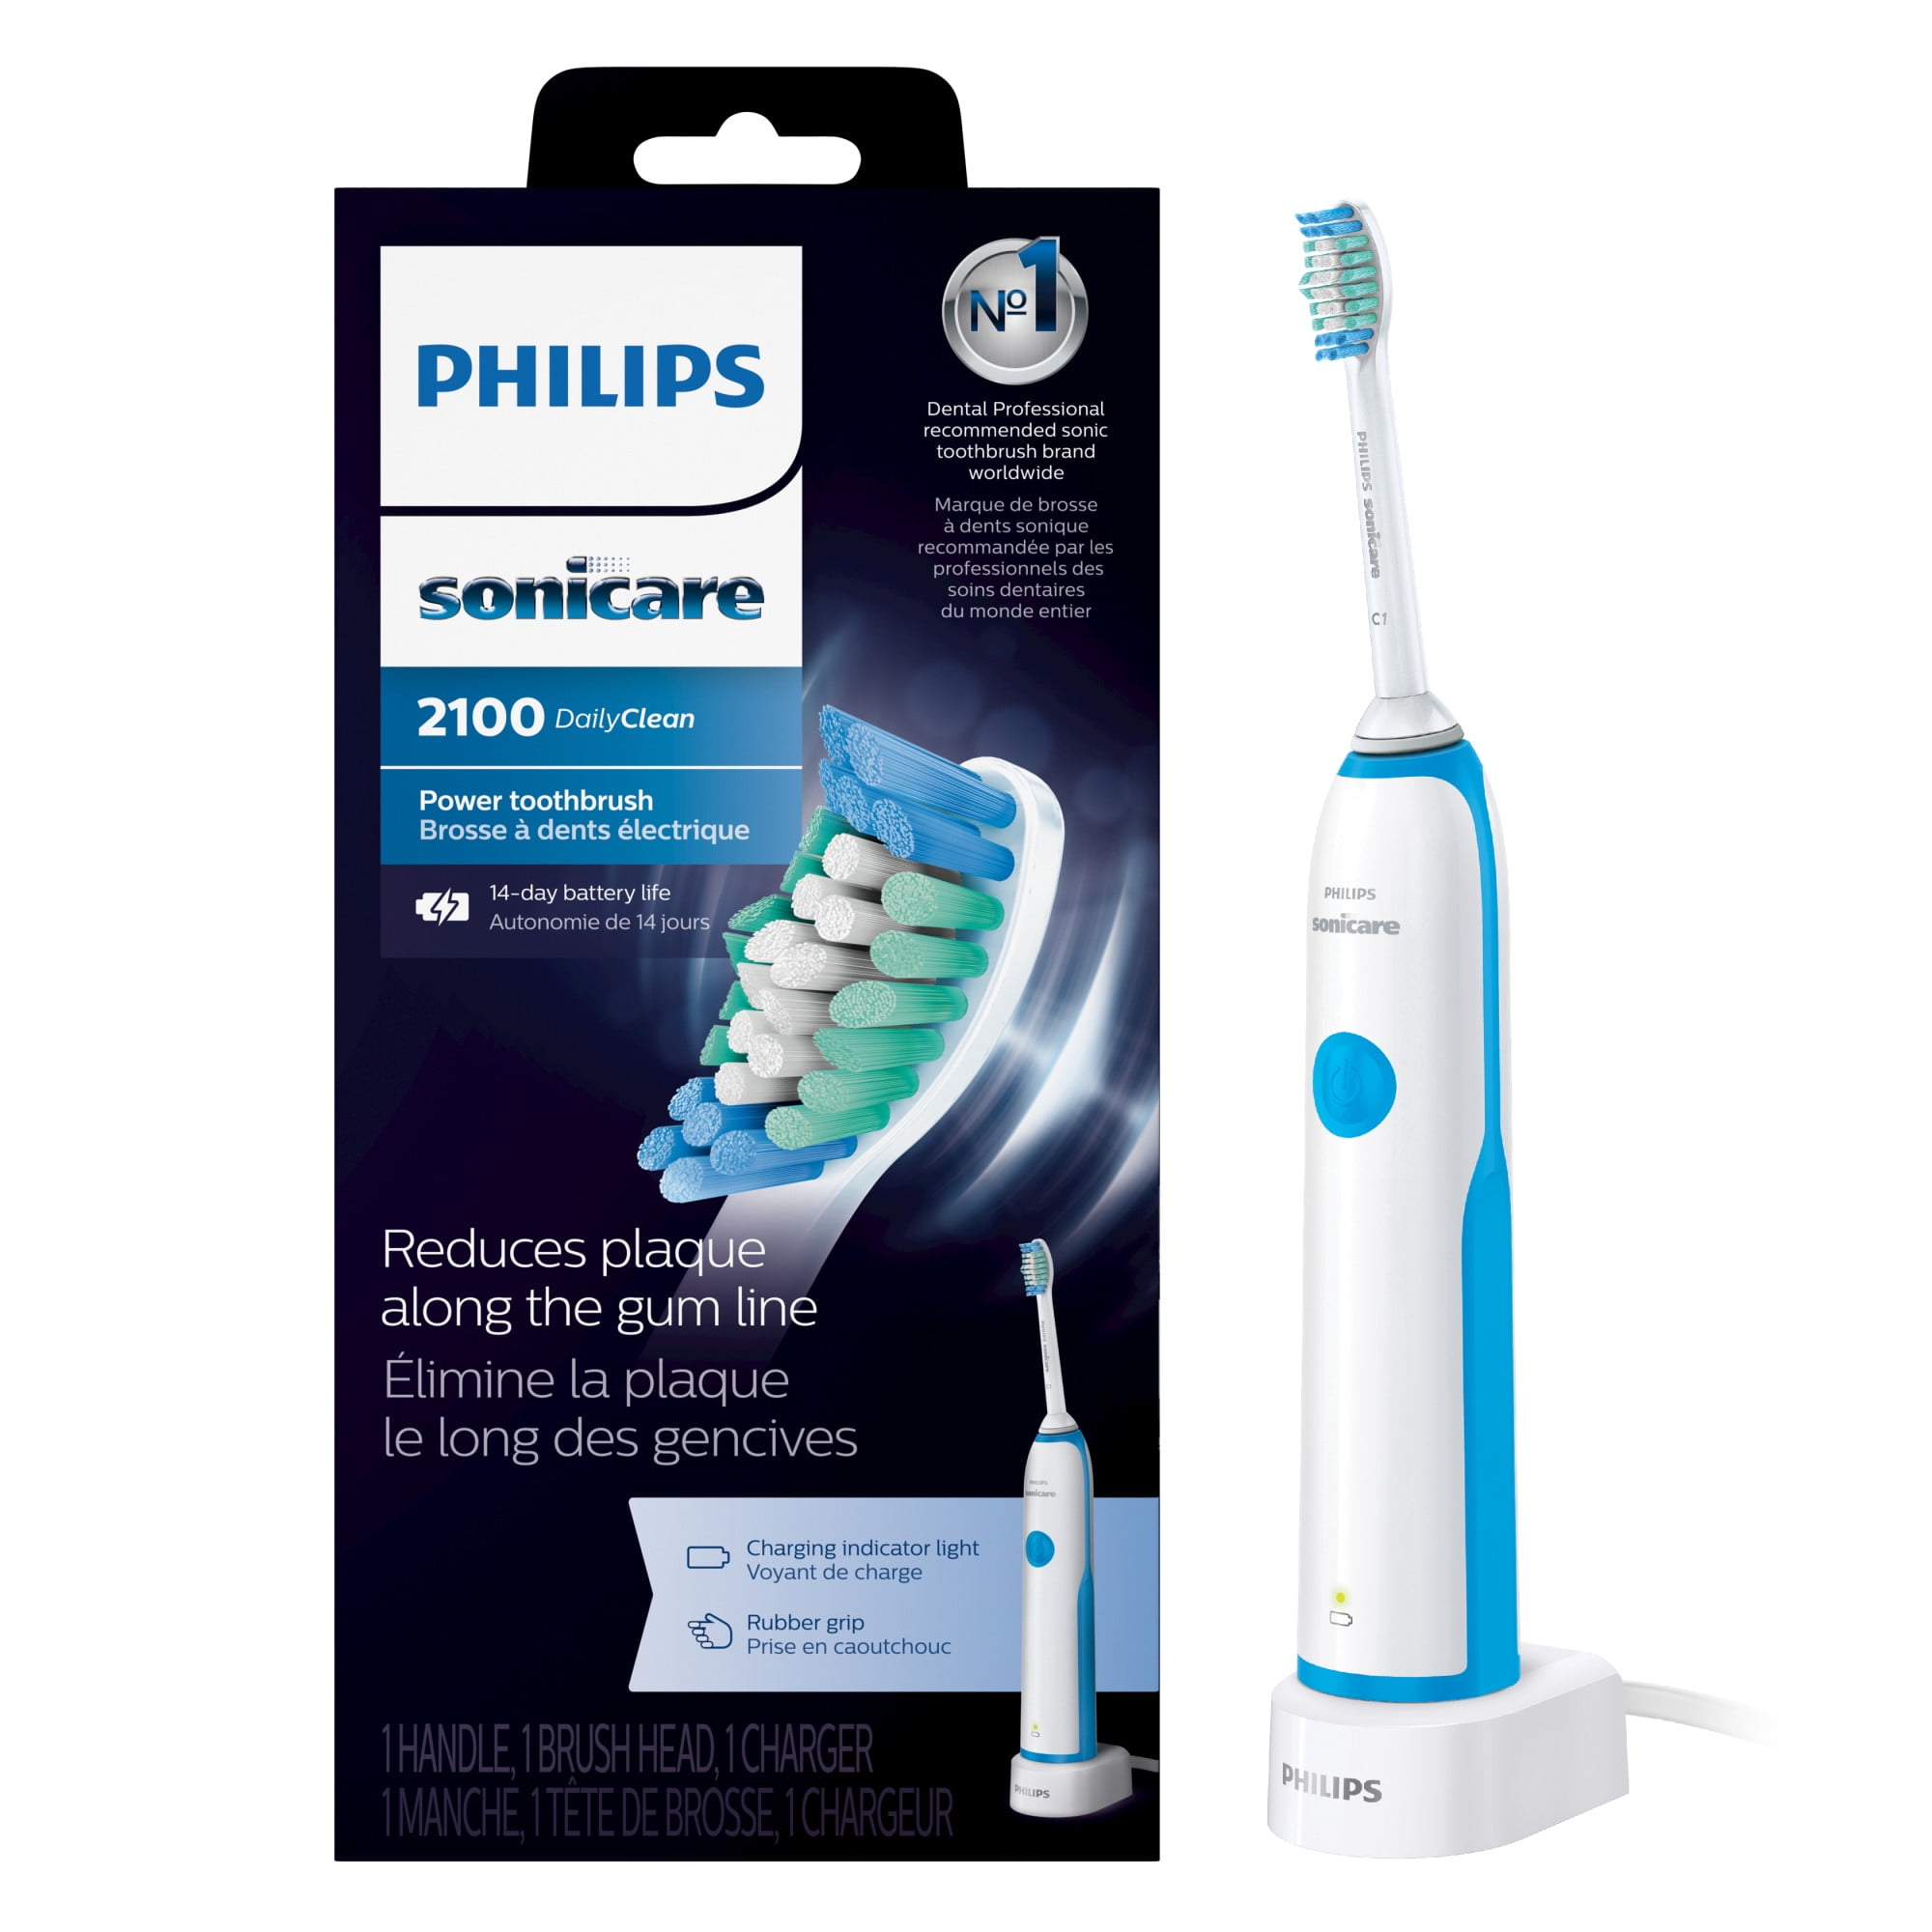 Филипс ультразвуковая. Philips Sonicare 2100. Филипс соникеа электрическая зубная щетка. Ультразвуковая зубная щетка Philips Sonicare. Philips Sonicare 2100 Series hx3651.